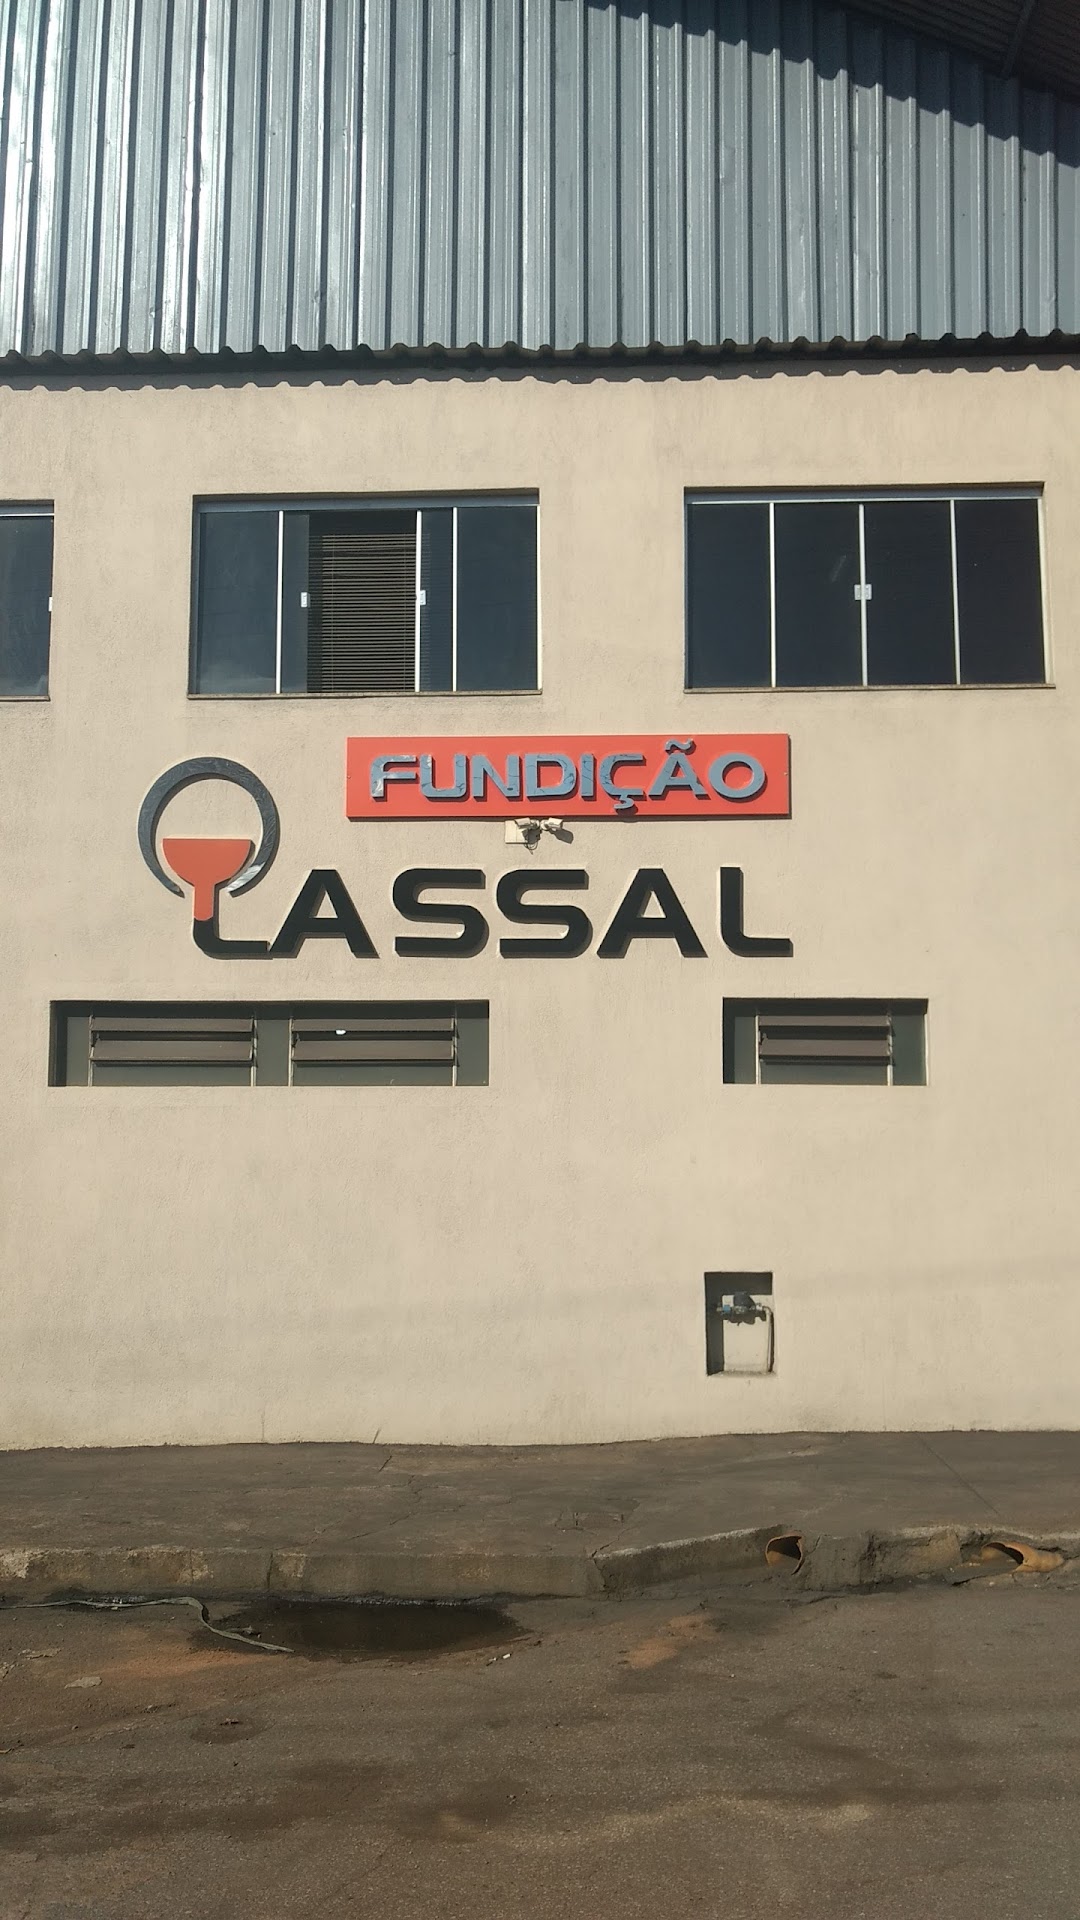 Fundição Lassal